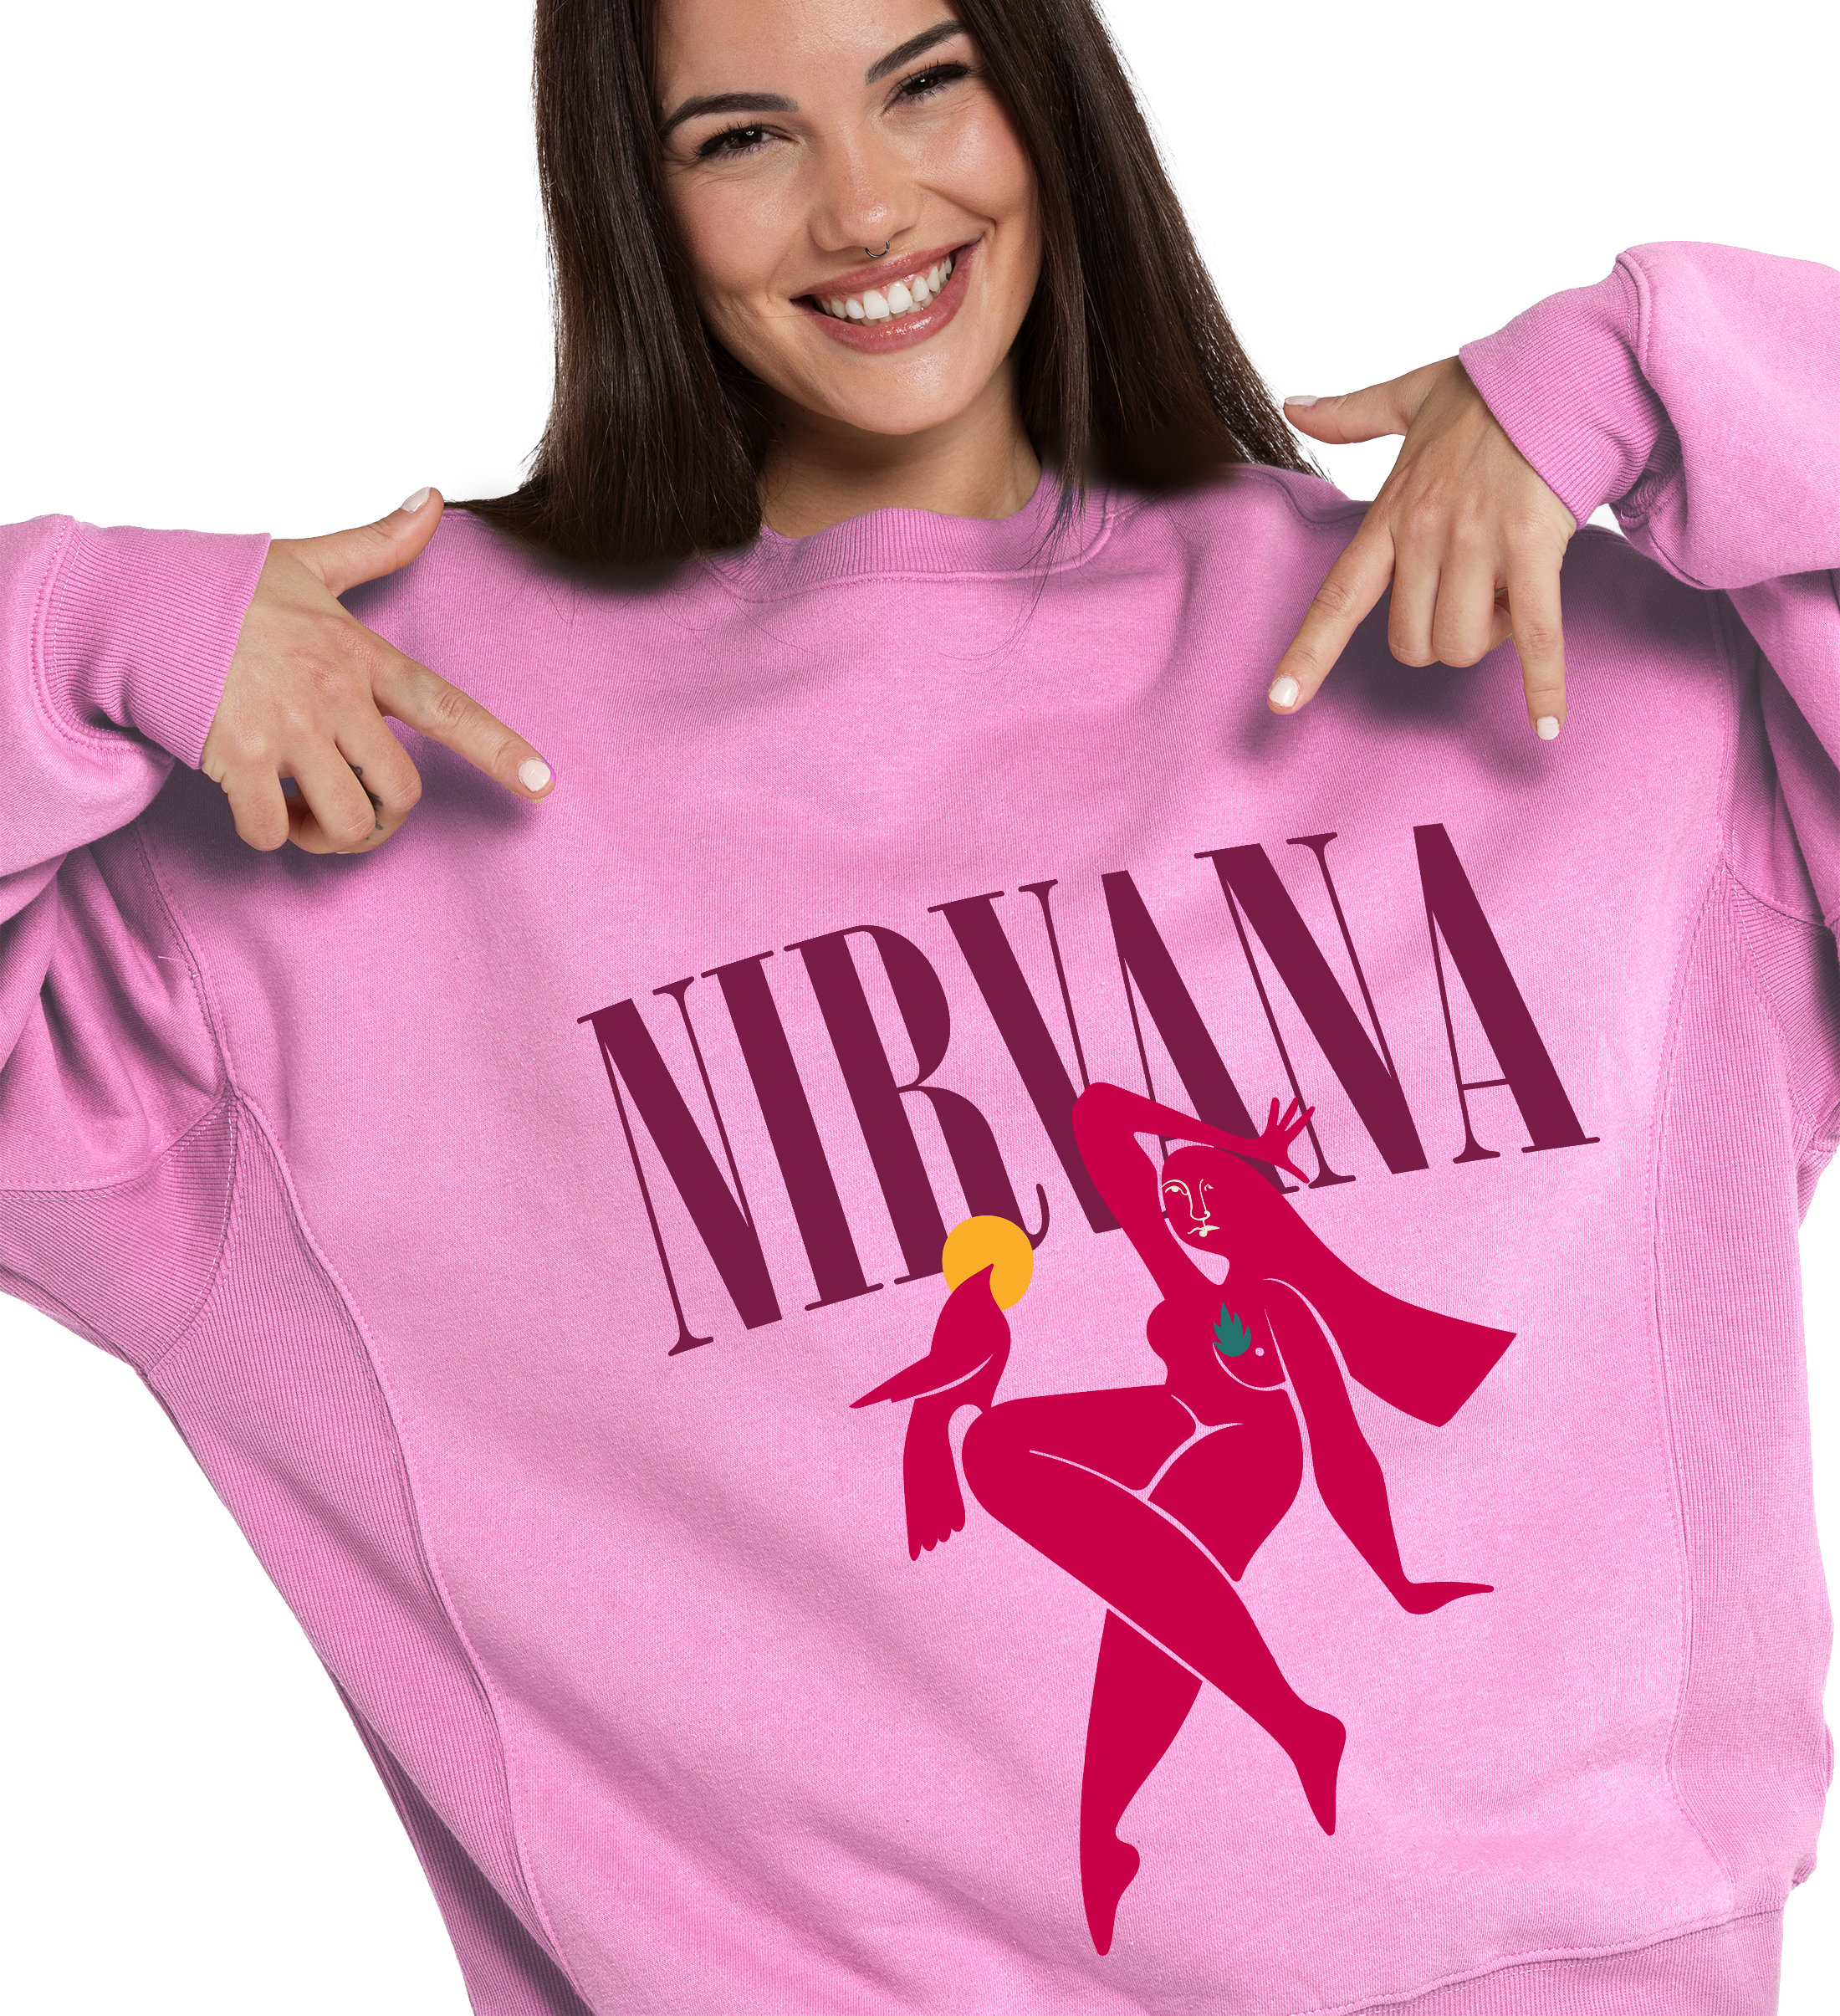 - Nirvana Store